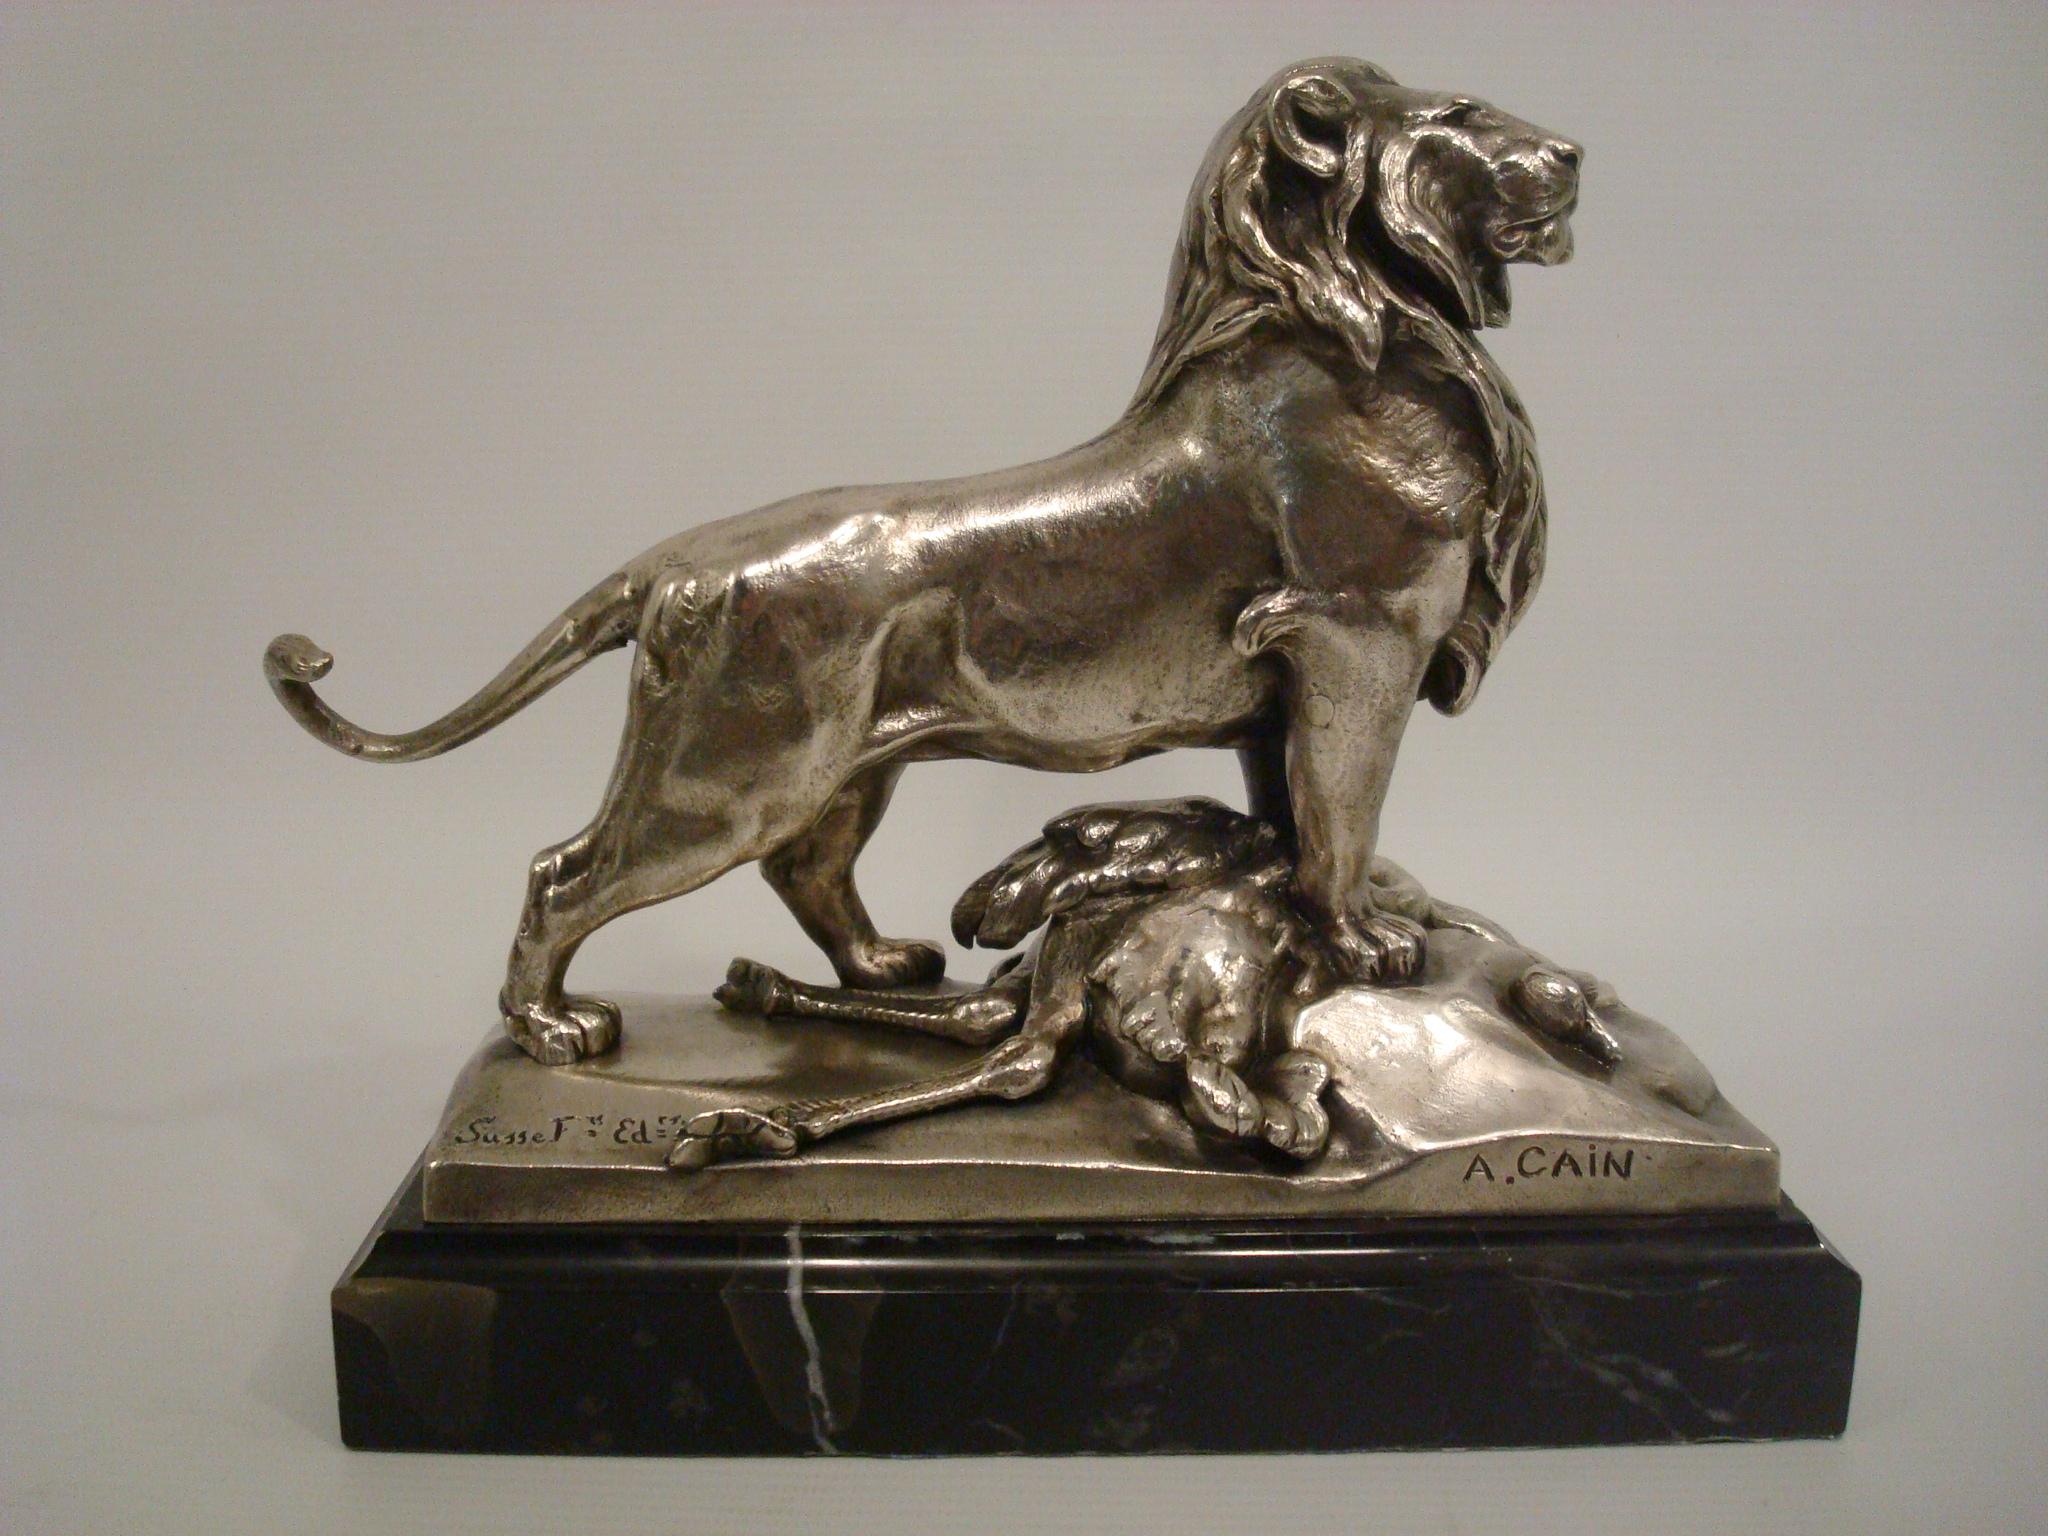 Auguste Cain Versilberter Bronze Löwe und Strauß (1822-1894). Diese schöne Bronze zeigt einen männlichen Löwen, der stolz steht, mit dem vorderen rechten Fuß auf einem Felsen hockt und mit dem linken Fuß fest auf seinem Gebet, einem Strauß, steht;